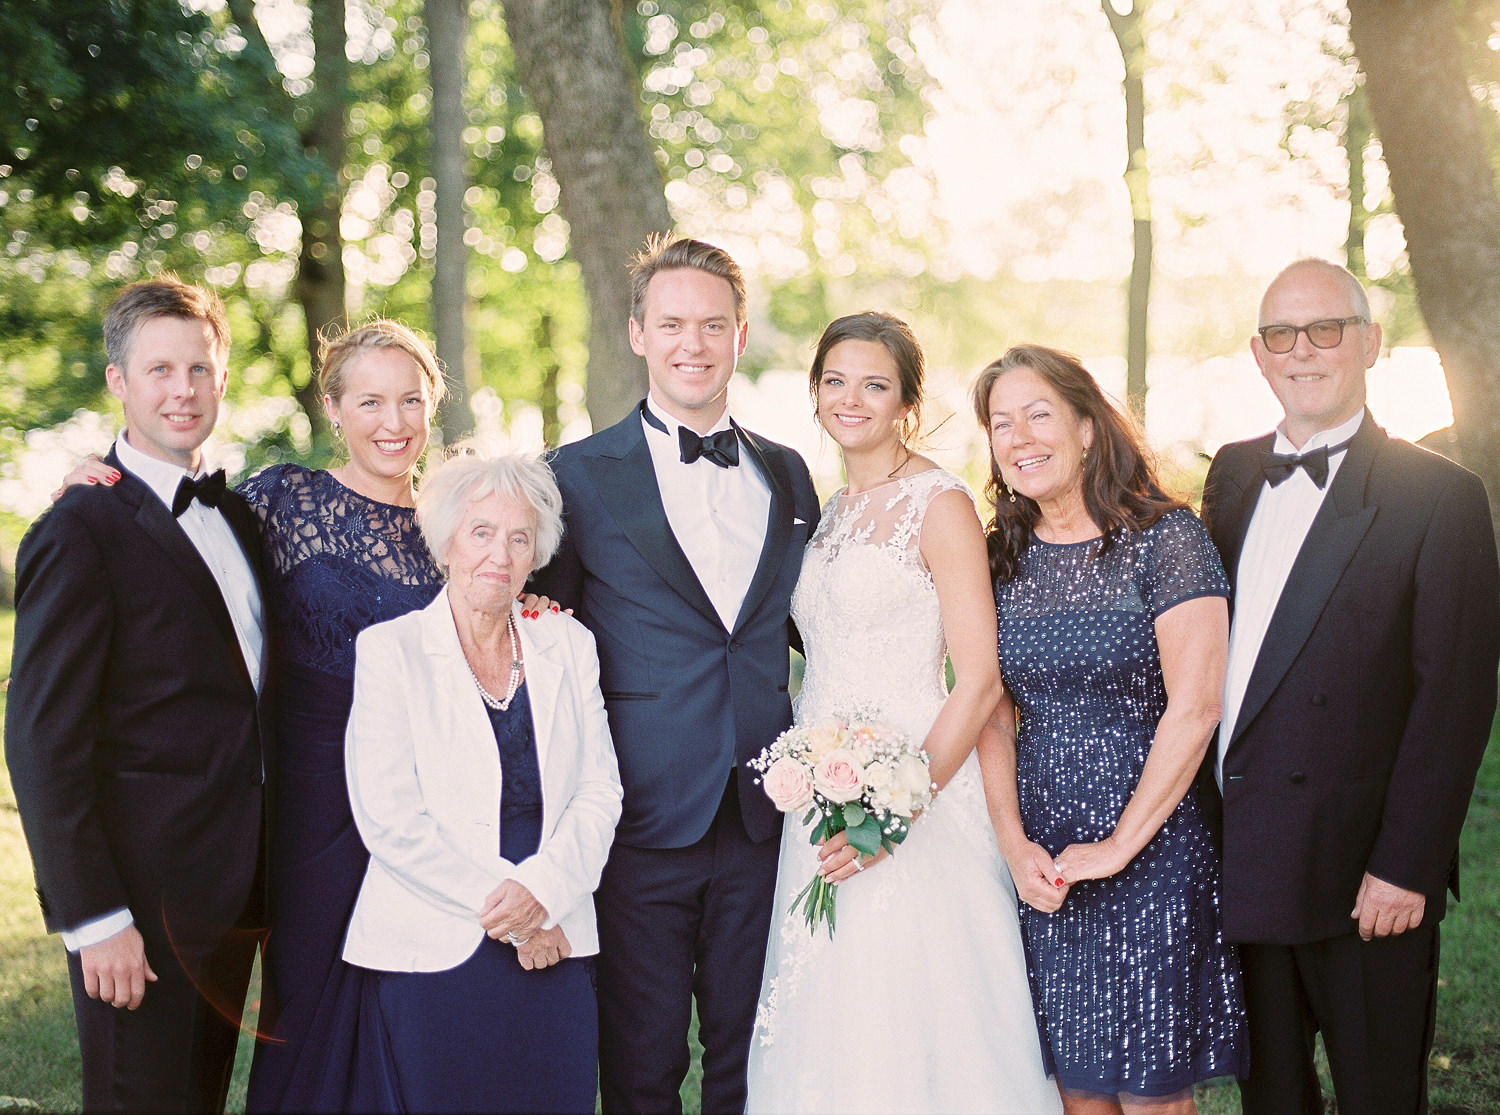 Family photos during a wedding day